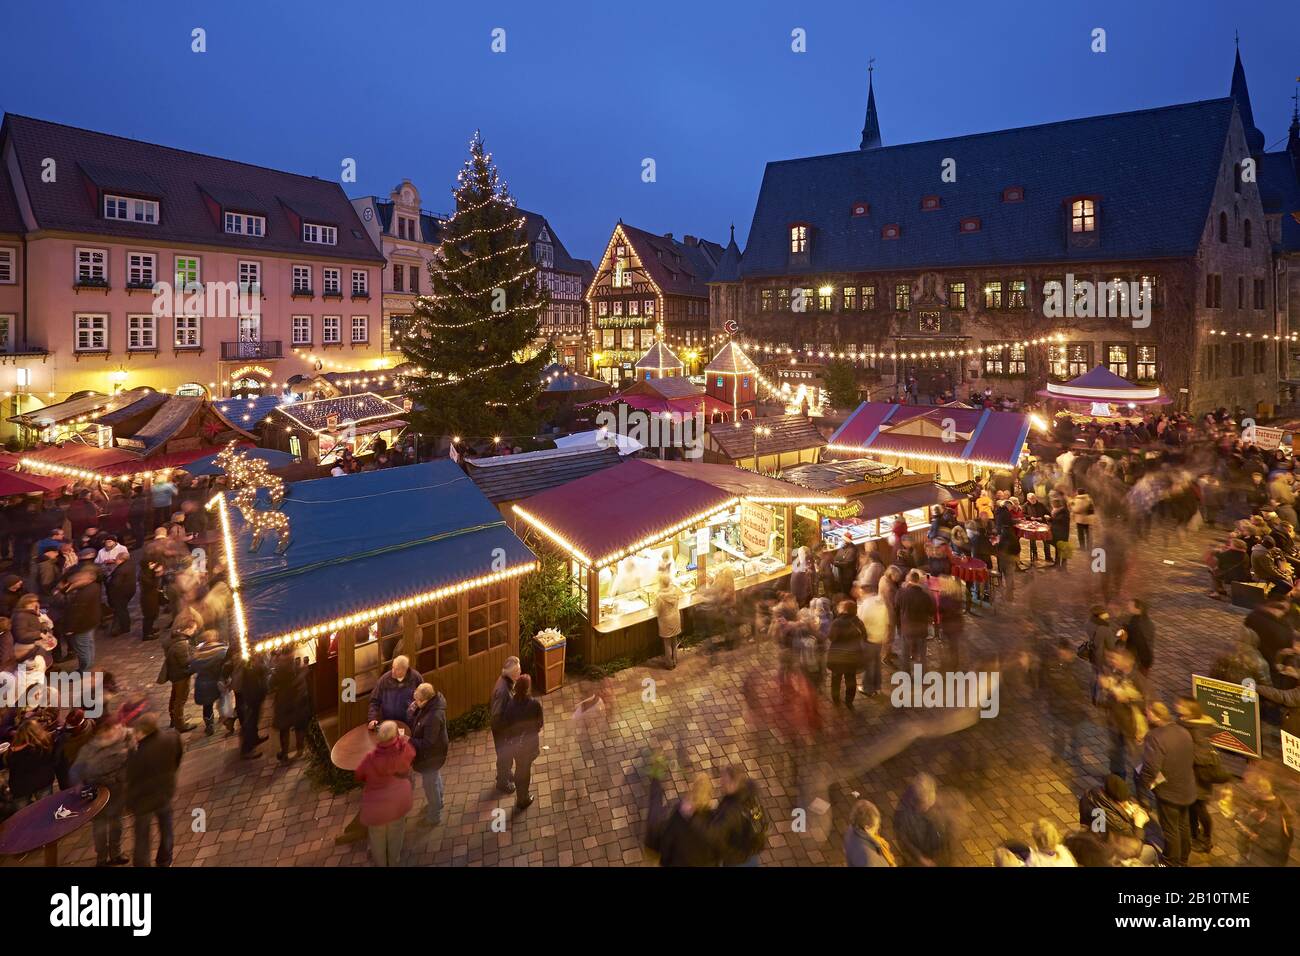 Marché de Noël sur le marché avec hôtel de ville à Quedlinburg, Saxe-Anhalt, Allemagne Banque D'Images